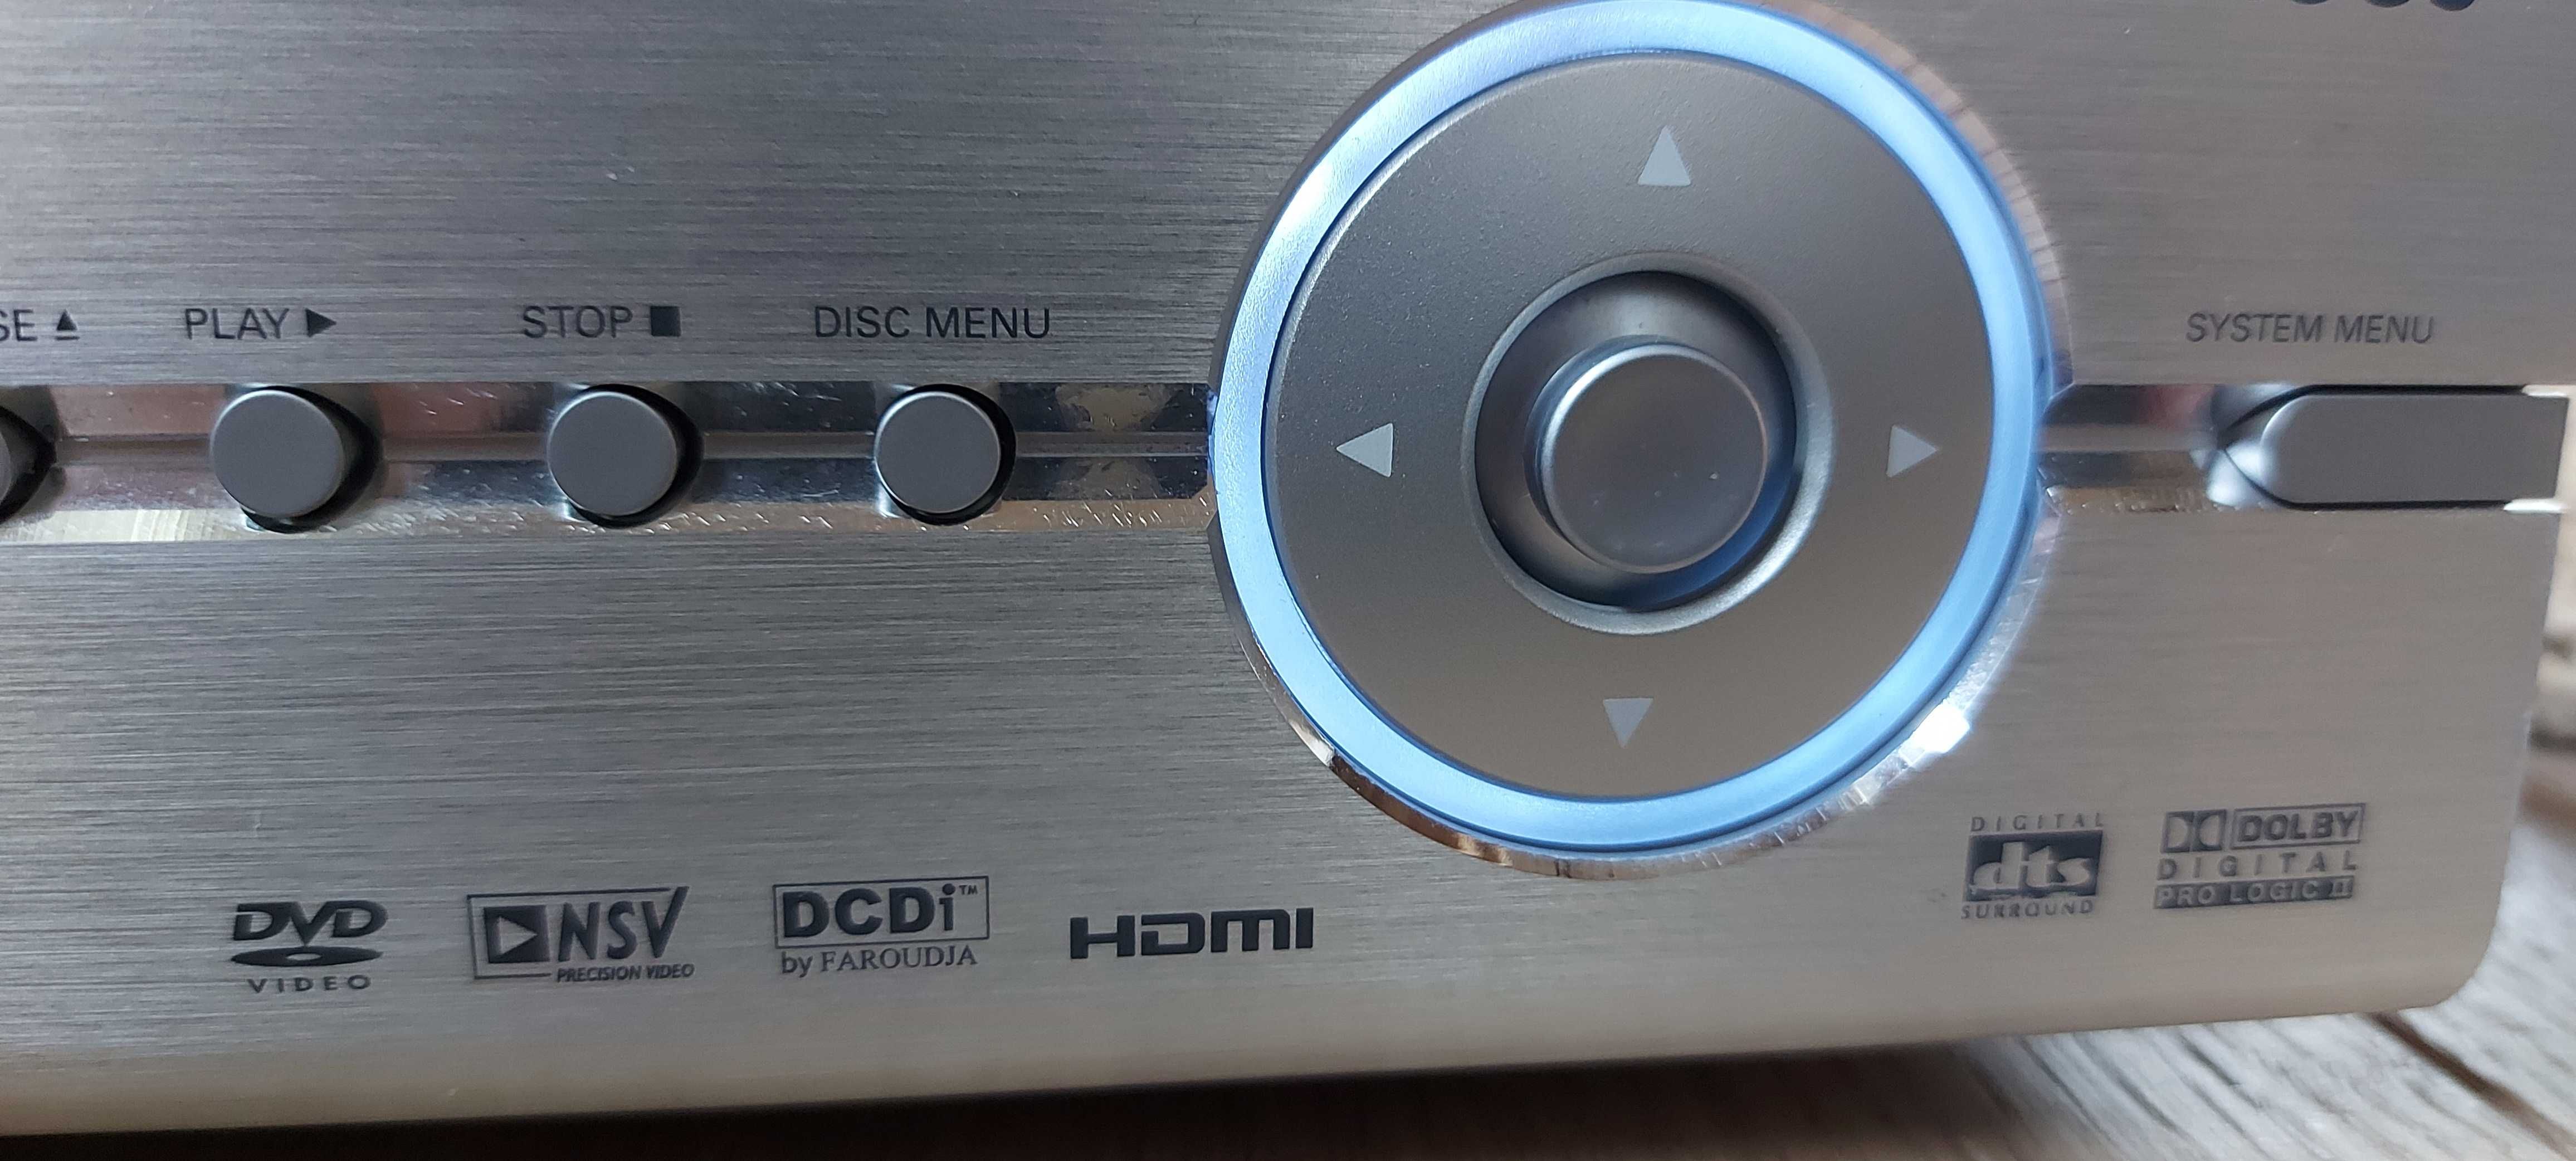 CD/SACD DVP 9000S Philips stan doskonaly.swietne brzmienie.zamiana